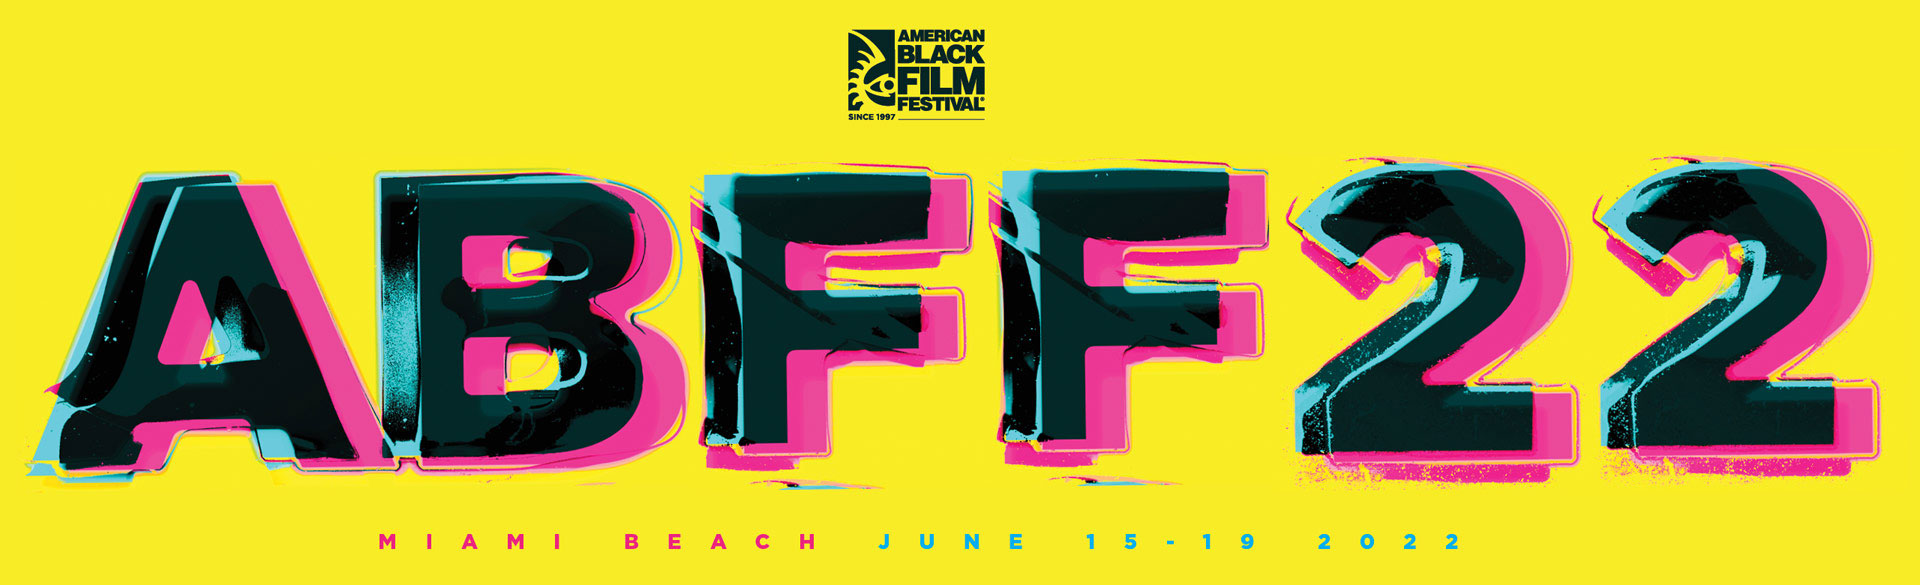 ABFF22 - Miami Beach, June 15-19, 2022